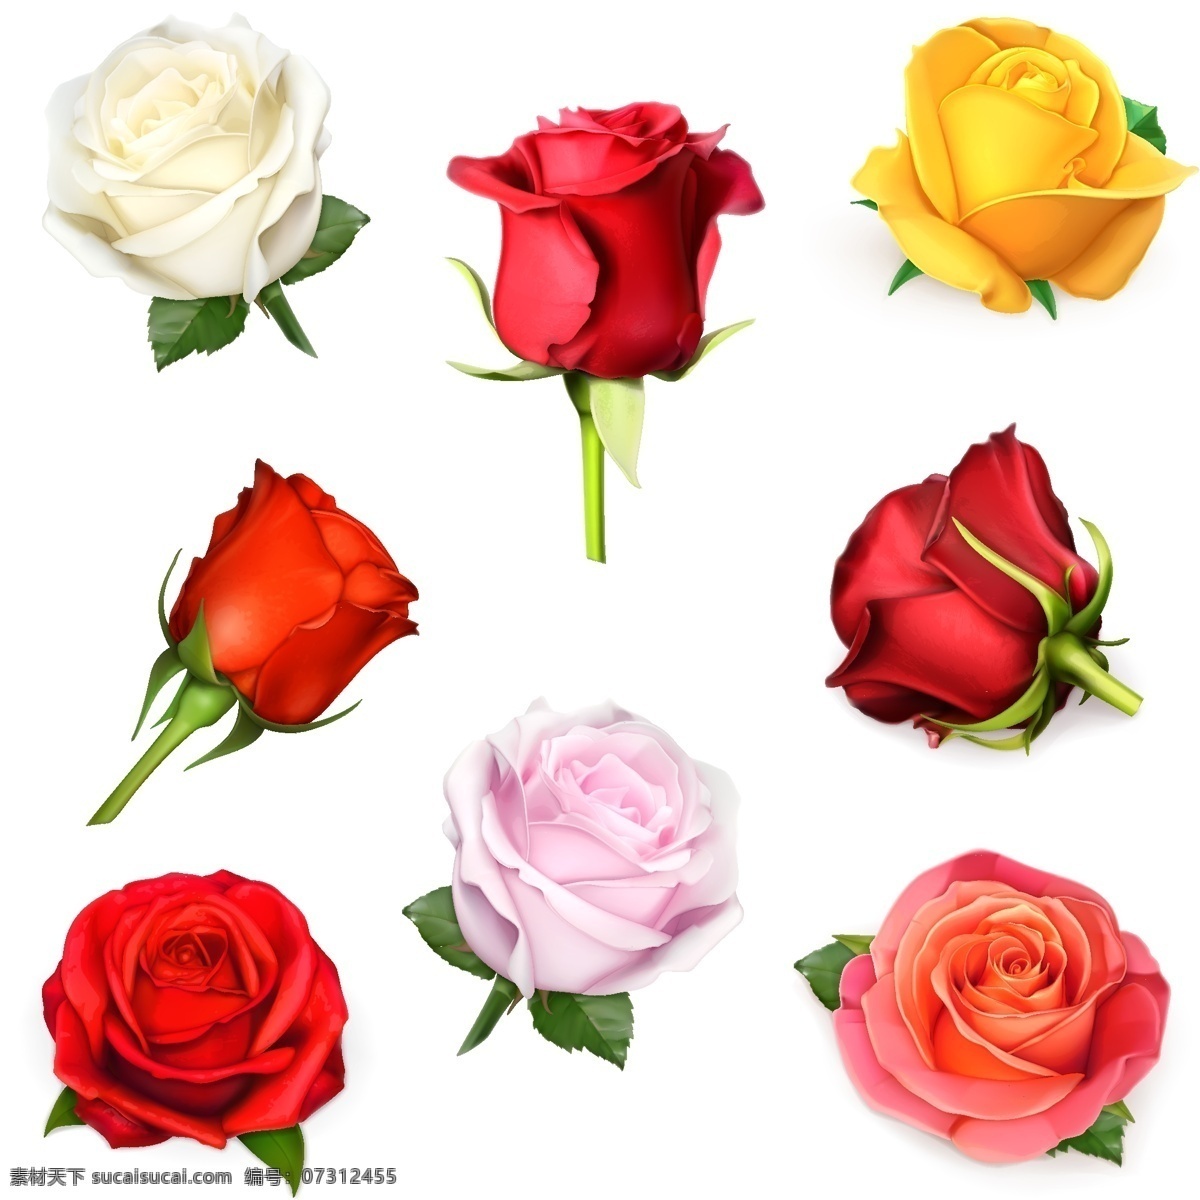 款 彩色 玫瑰花 矢量 白玫瑰 红玫瑰 黄玫瑰 粉玫瑰 彩色玫瑰 漂亮的花朵 盛开的花朵 鲜花 花卉 花朵装饰 情人节素材 文化艺术 节日庆祝